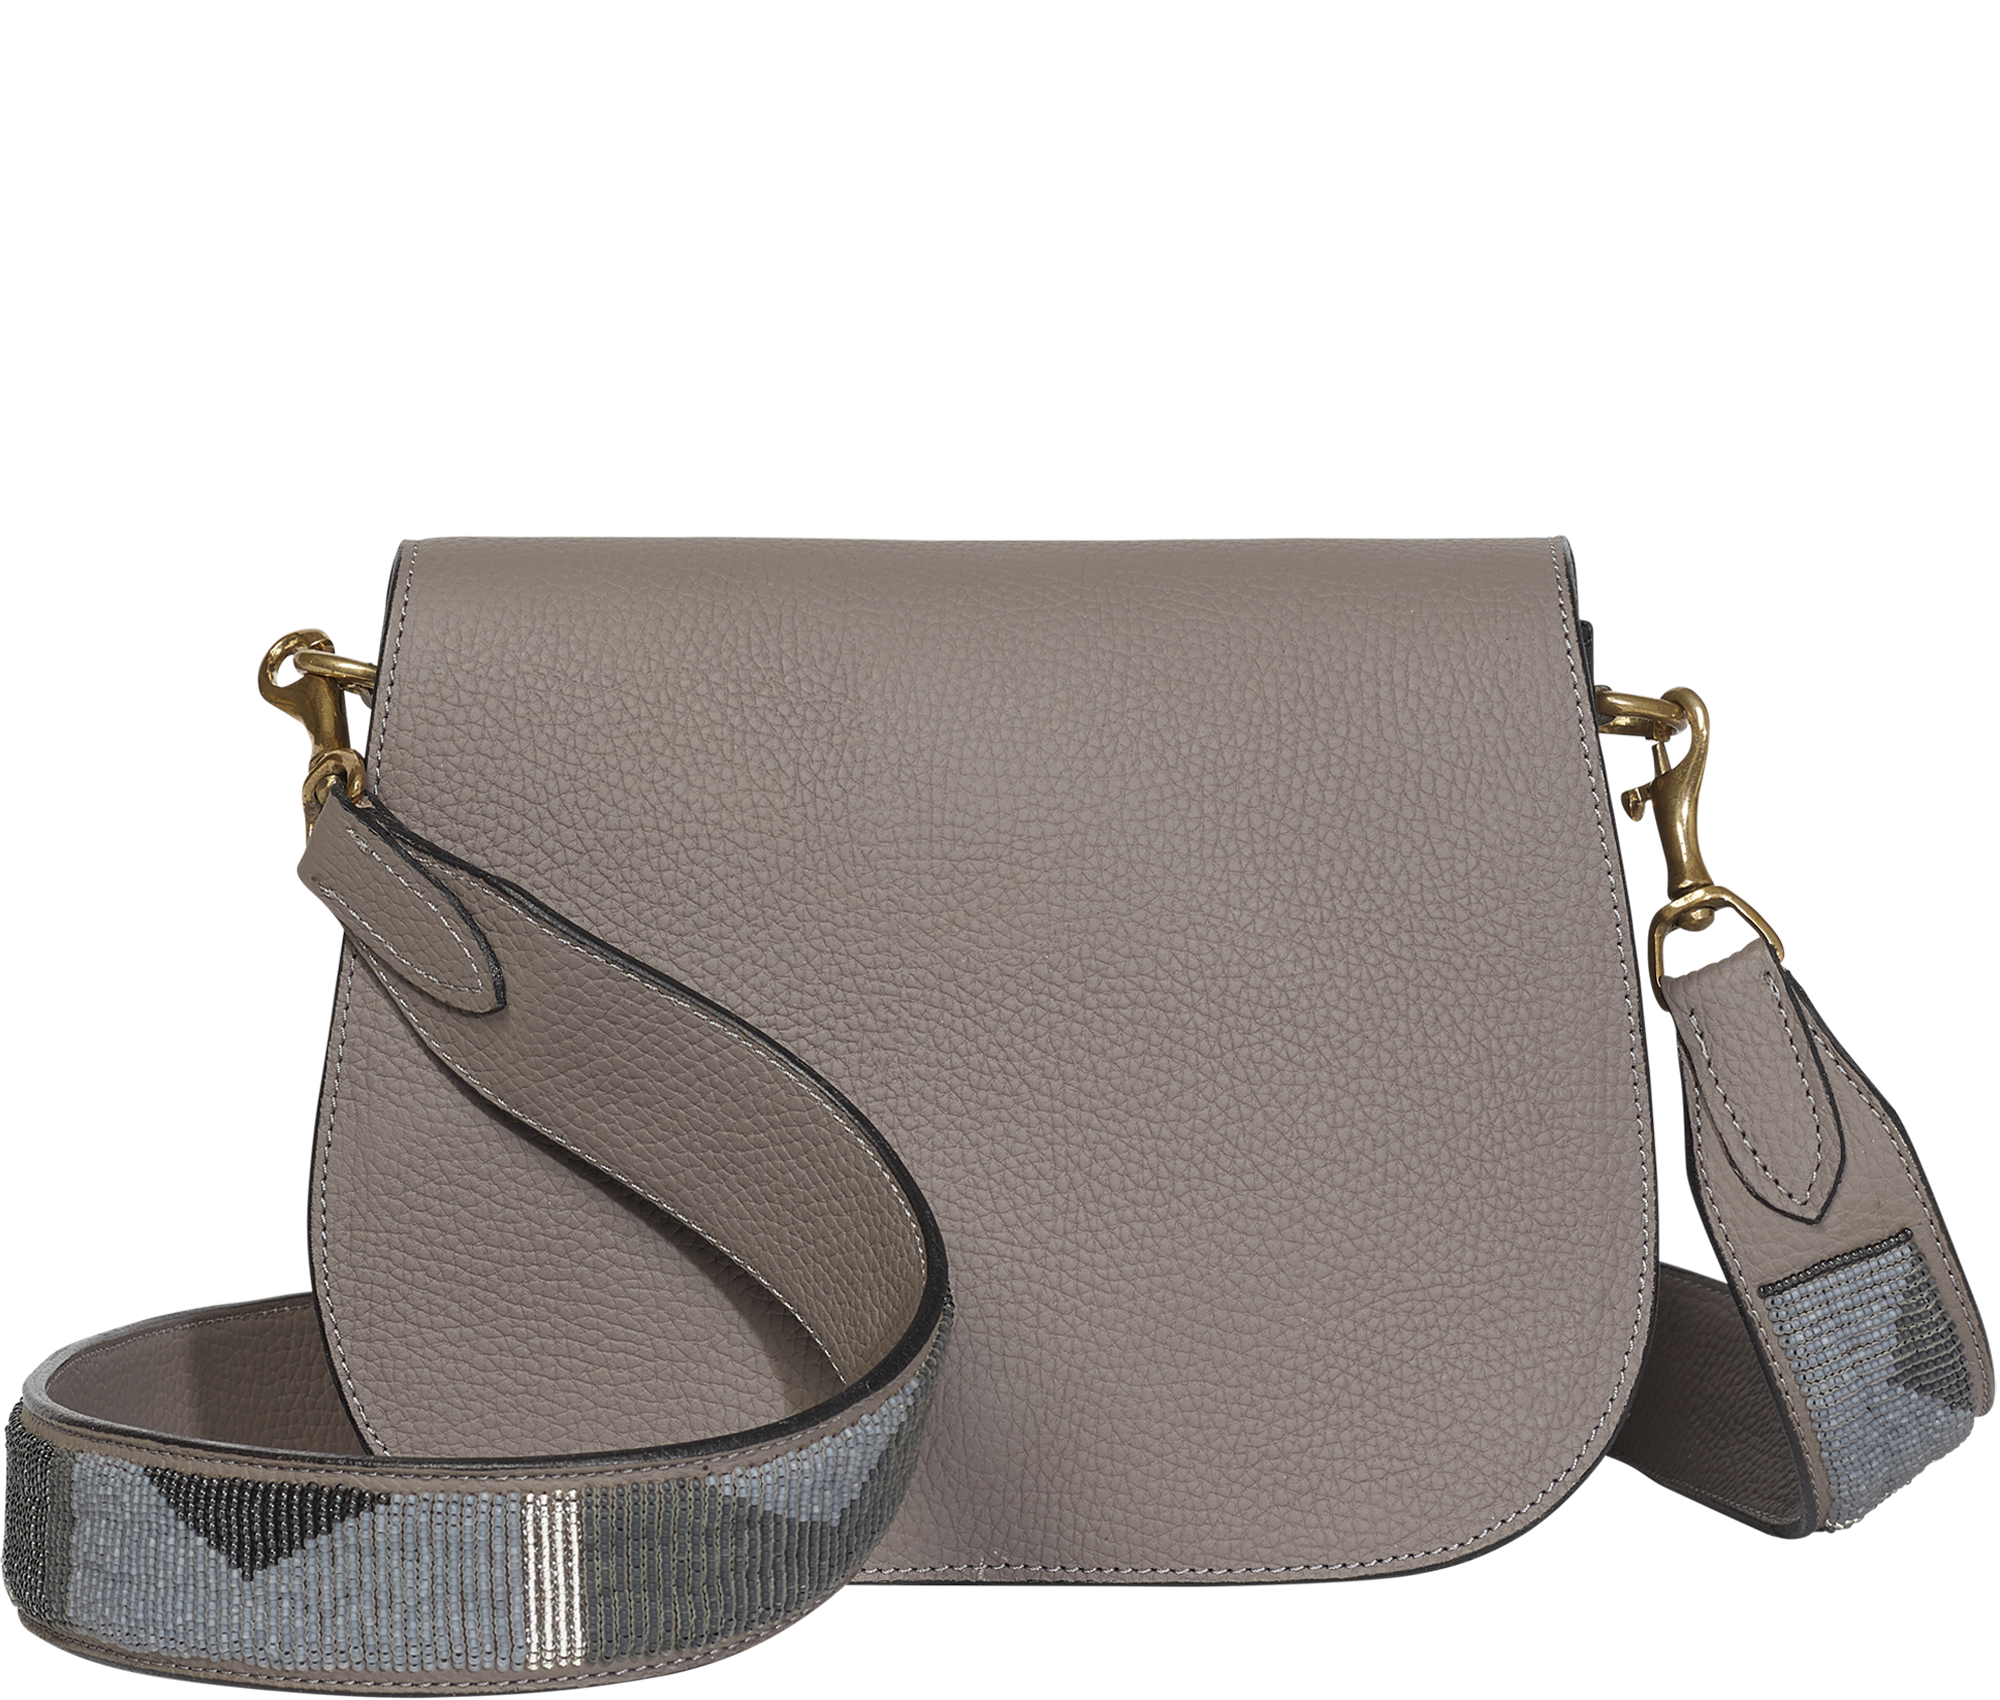 Handbag Grey Beaded Strap Crossbody Bag